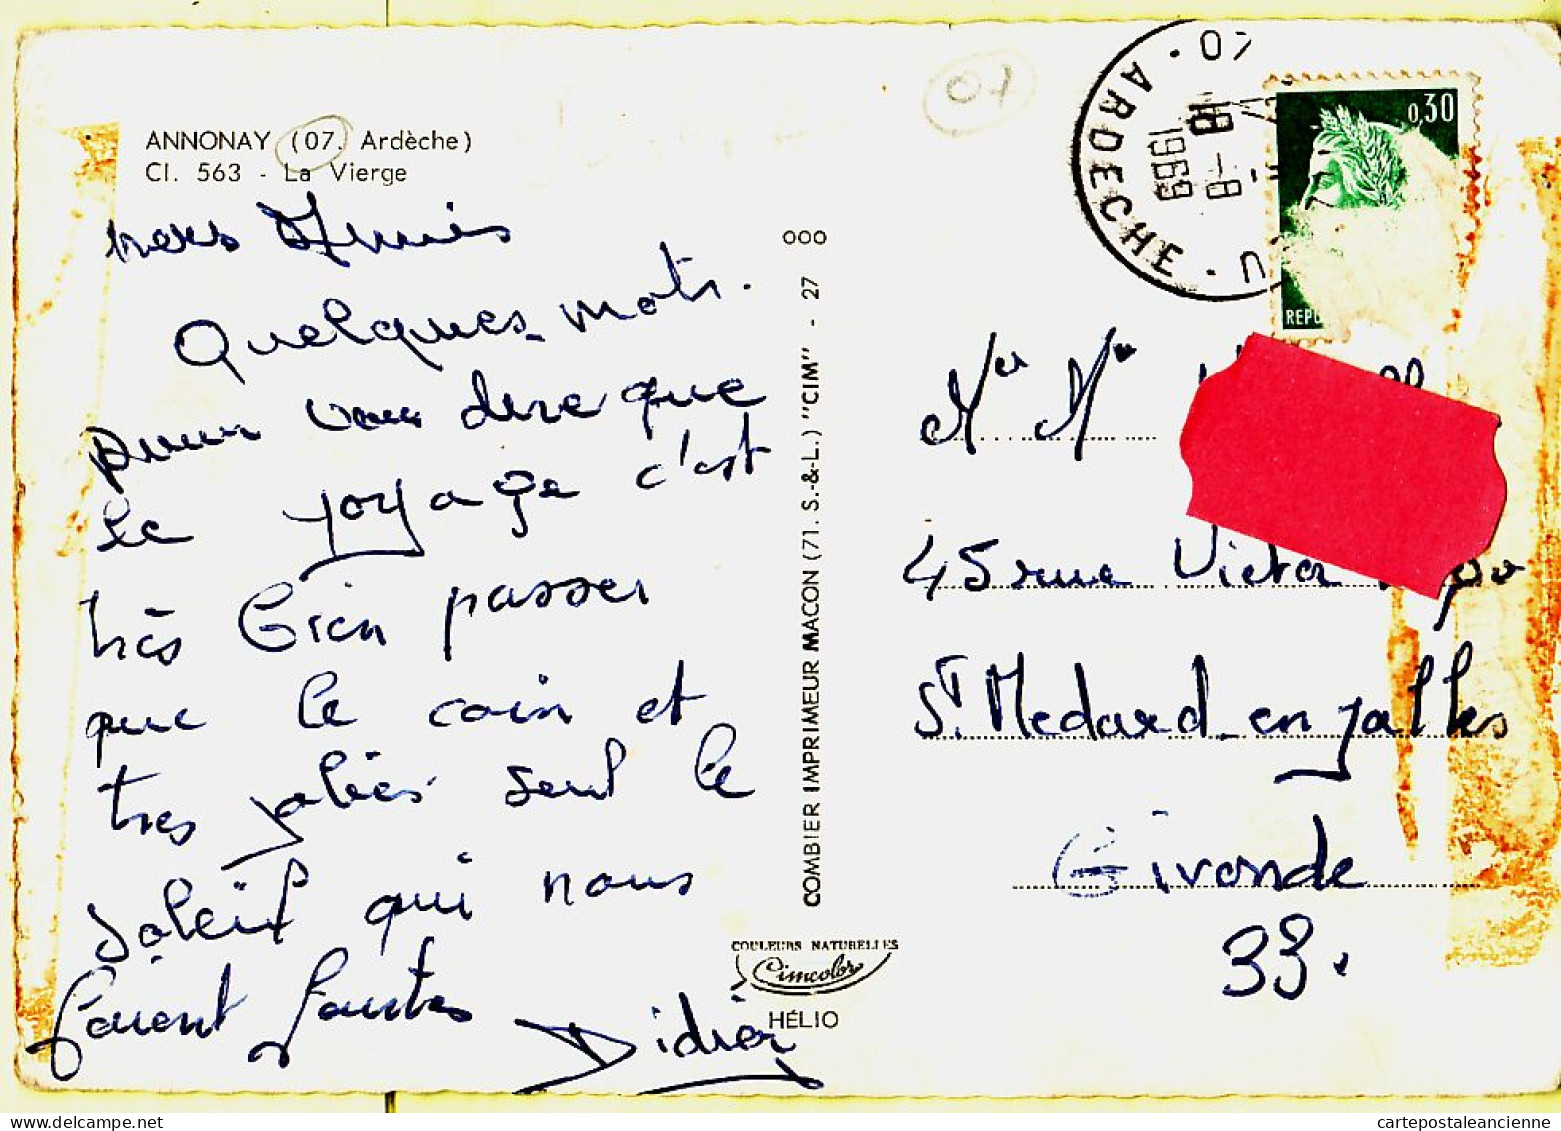 05604 / ⭐ (•◡•) ANNONAY 07-Ardèche La VIERGE CPM Postée 18.08.1969 - CIM COMBIER 563  - Annonay